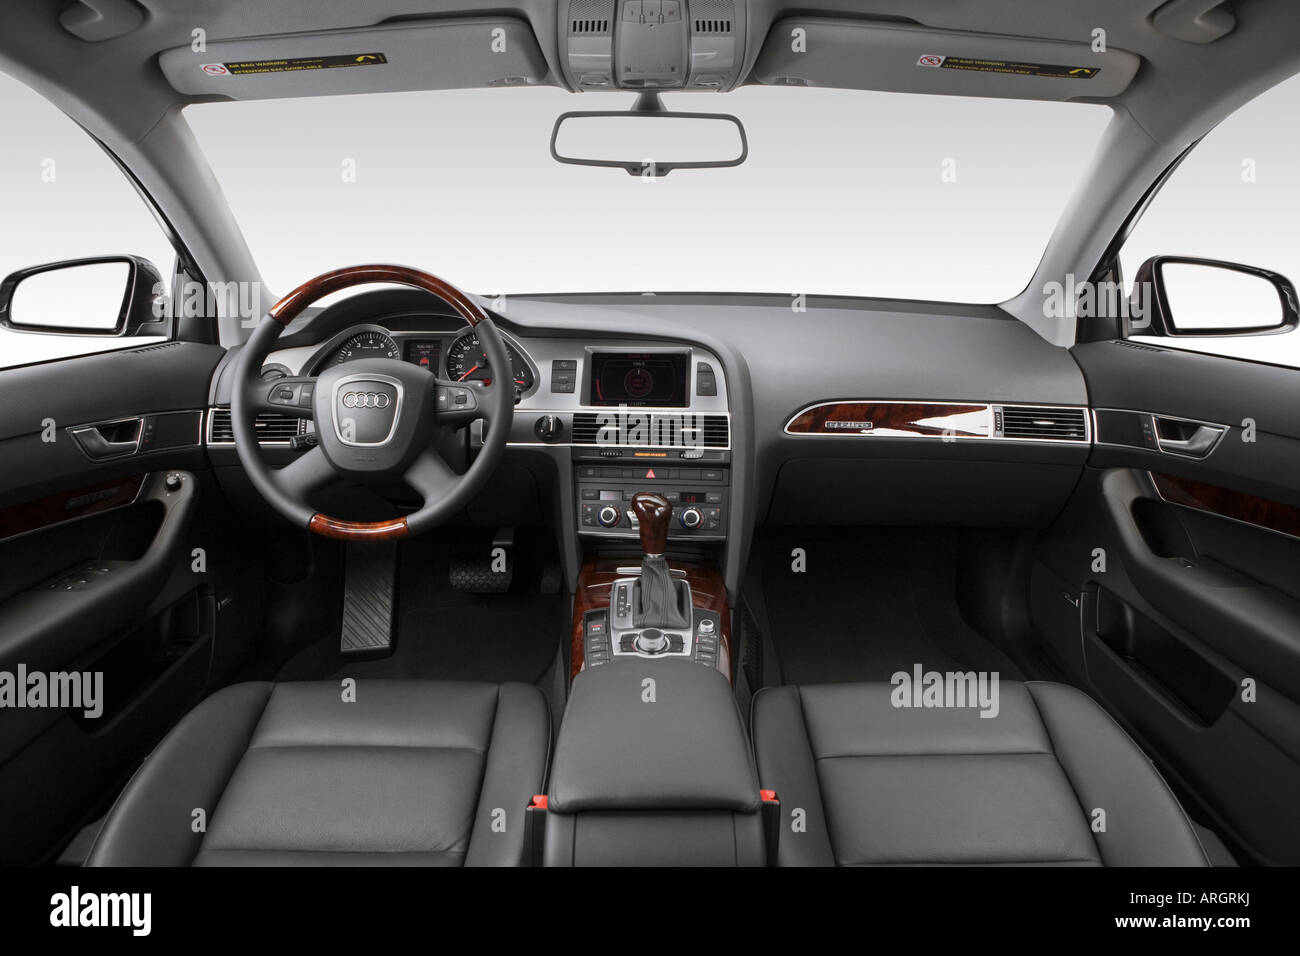 2007 Audi A6 Avant 3.2 quattro en gris - planche de bord, console centrale, le levier de vitesses voir Banque D'Images